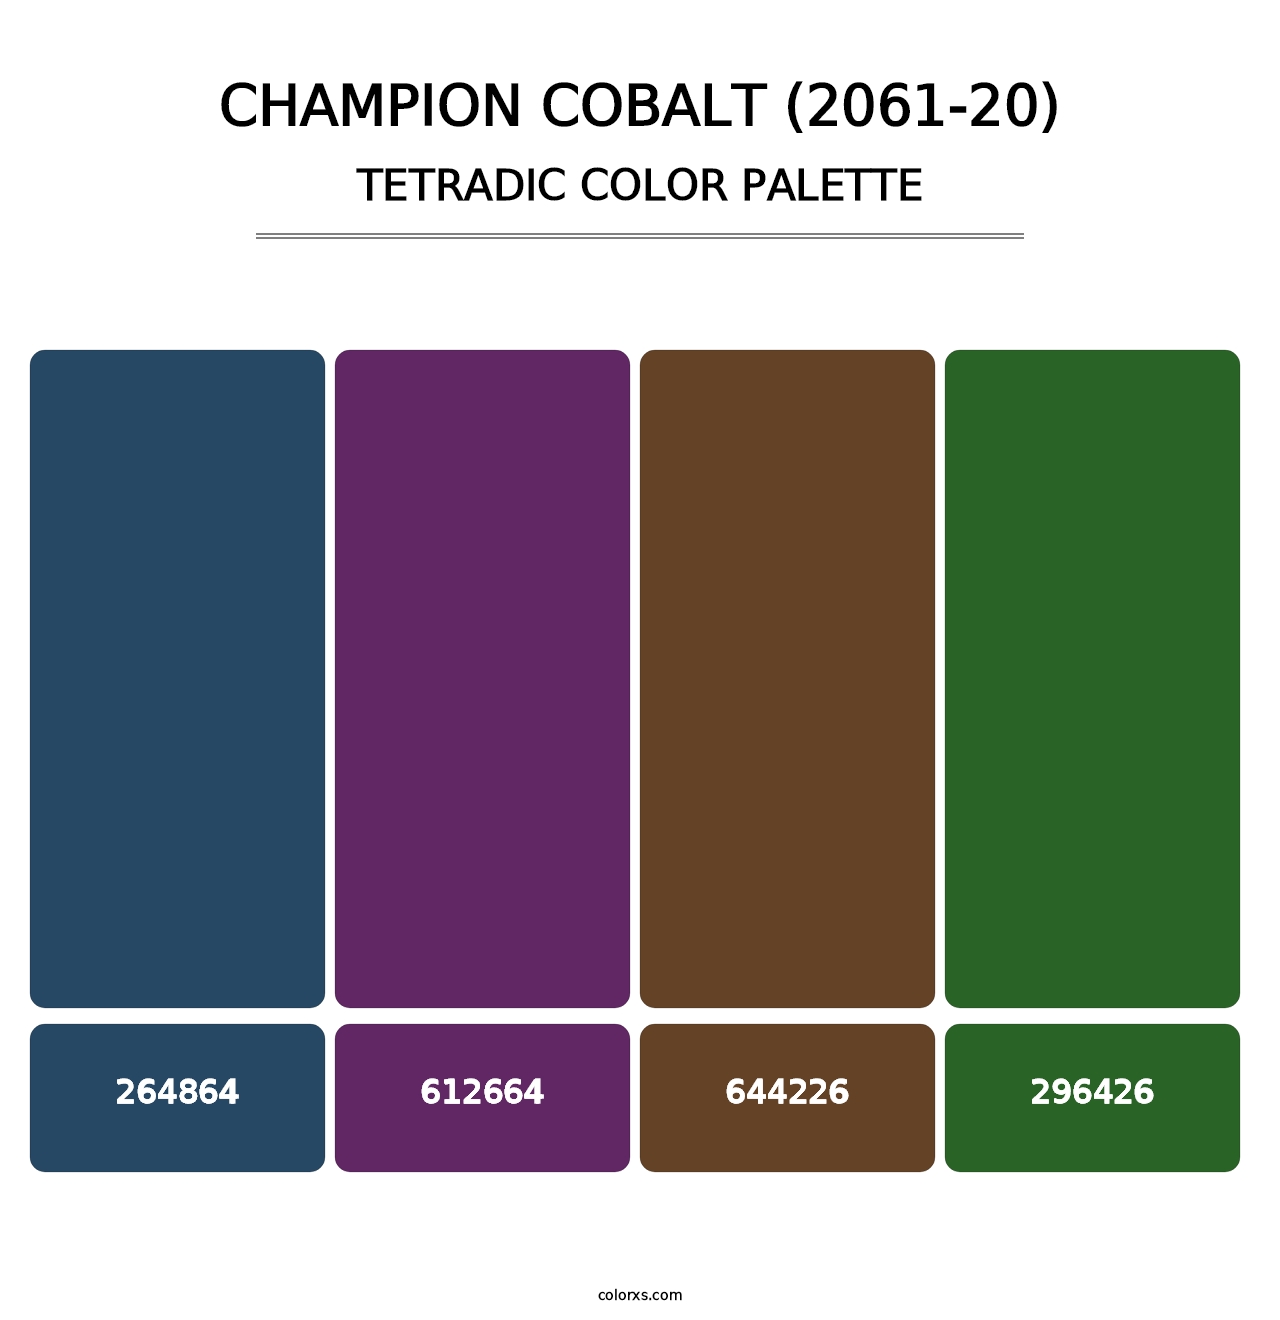 Champion Cobalt (2061-20) - Tetradic Color Palette